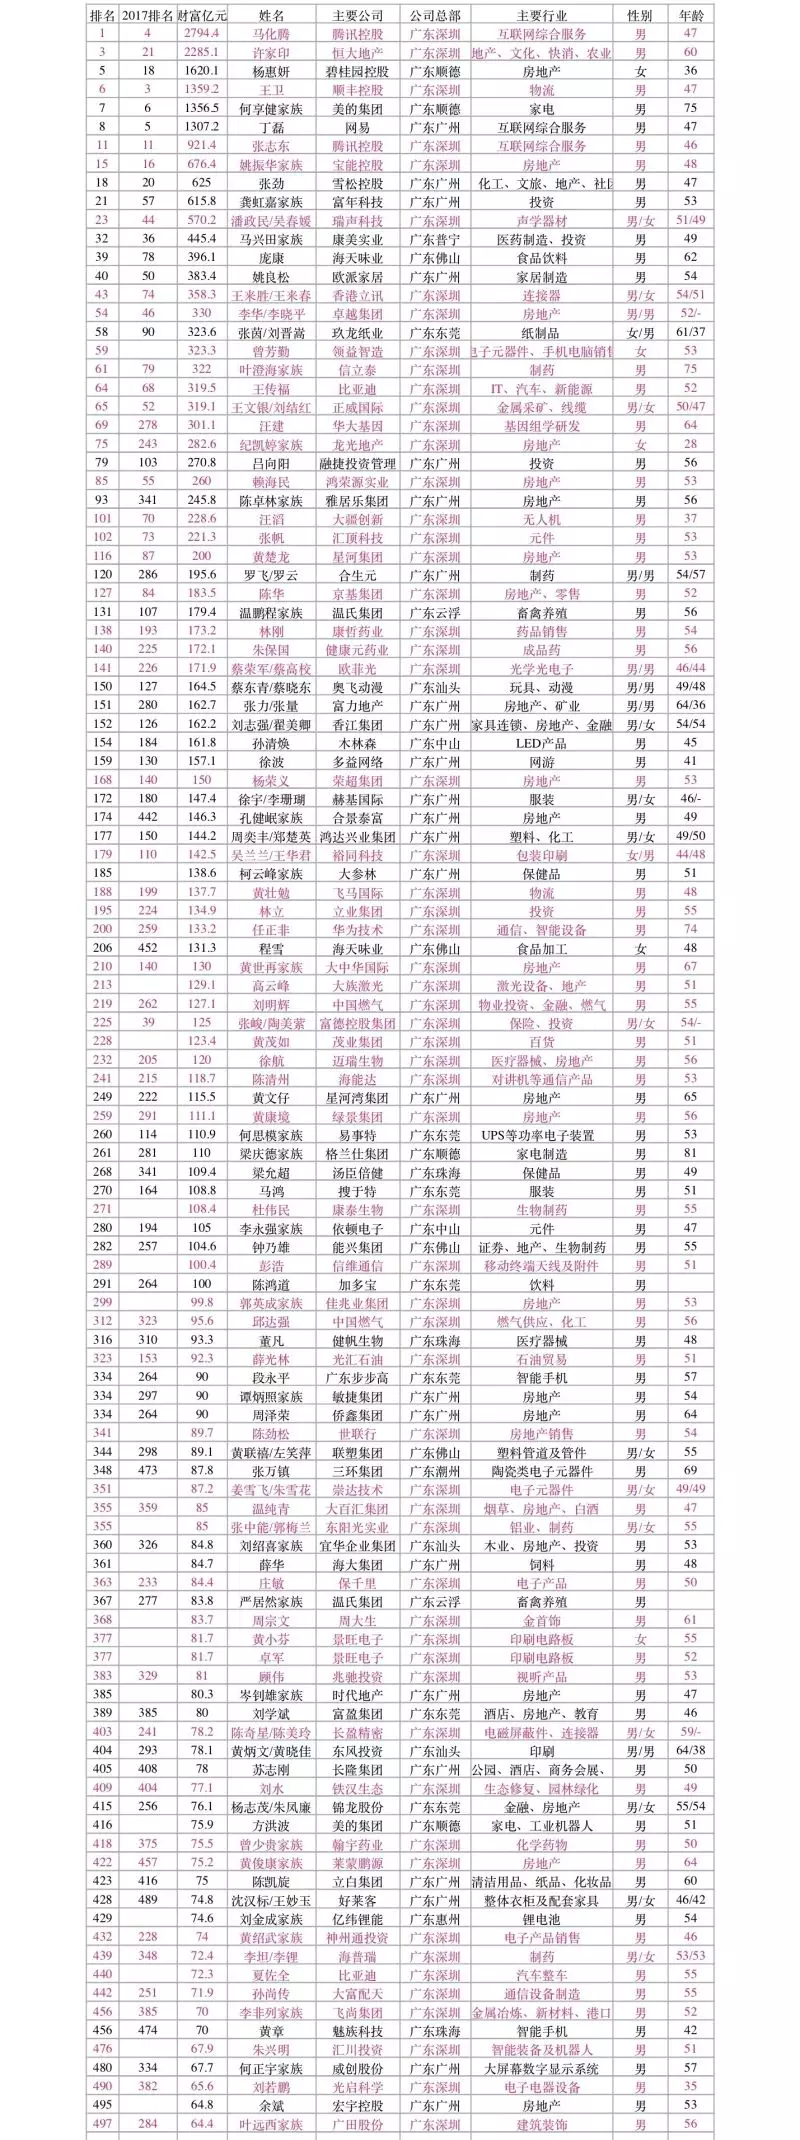 2018中国最富500人排行榜出炉 113位来自广东